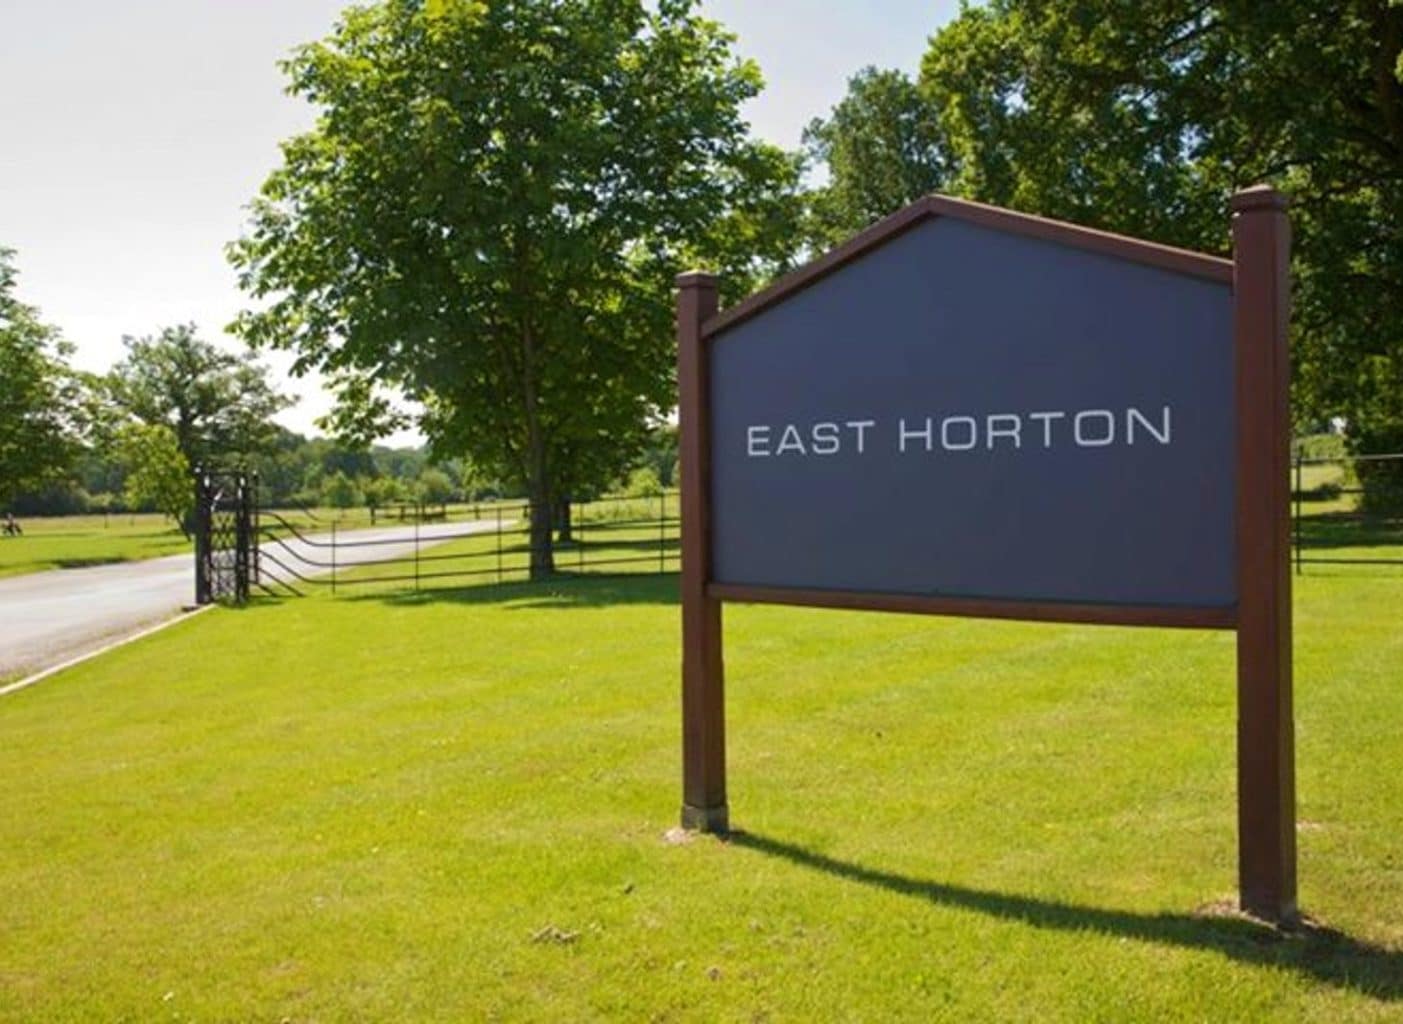 East Horton Golf Club, golf in england